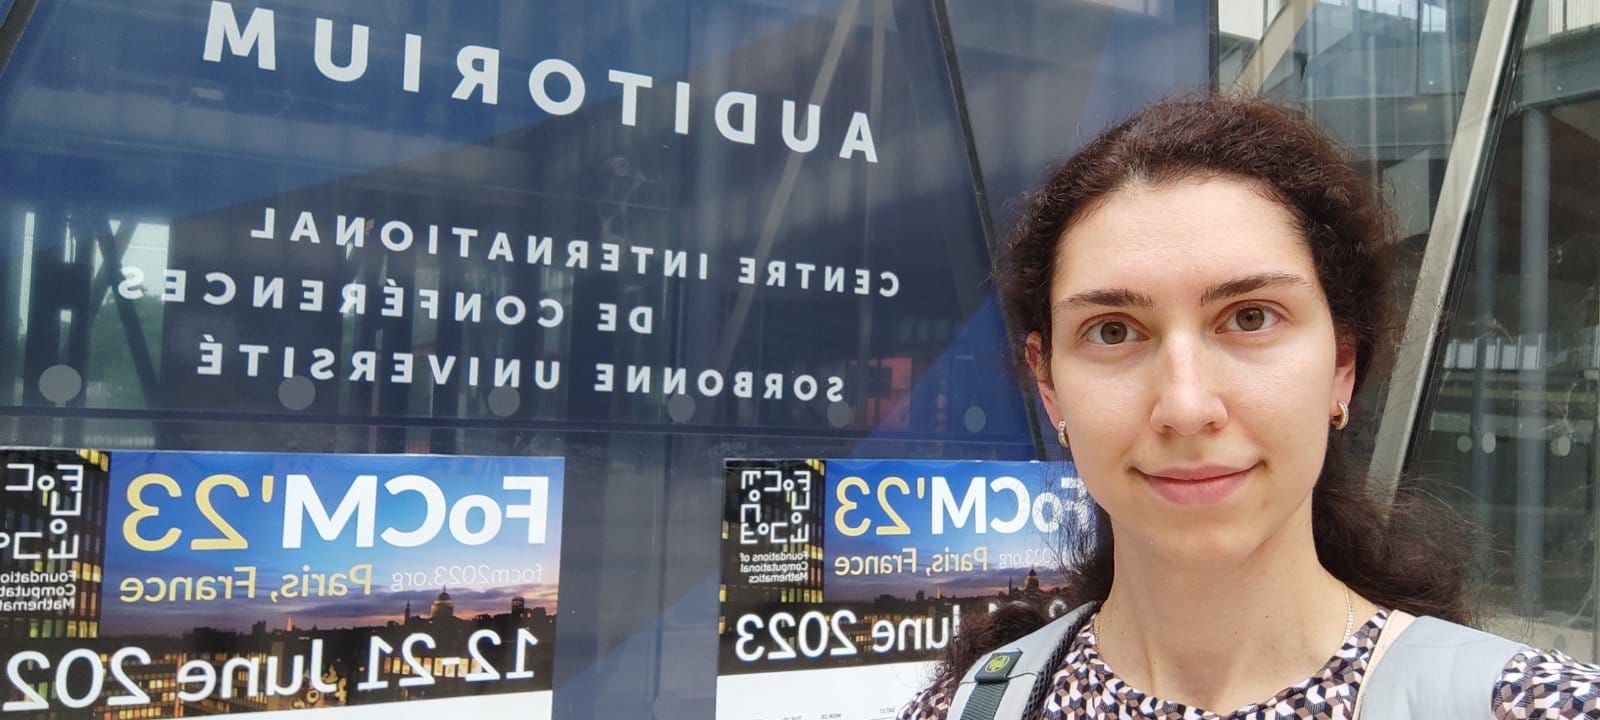 Українка Катерина Пожарська отримала міжнародну премію з математики, яку присуджують лише одному претенденту щороку.